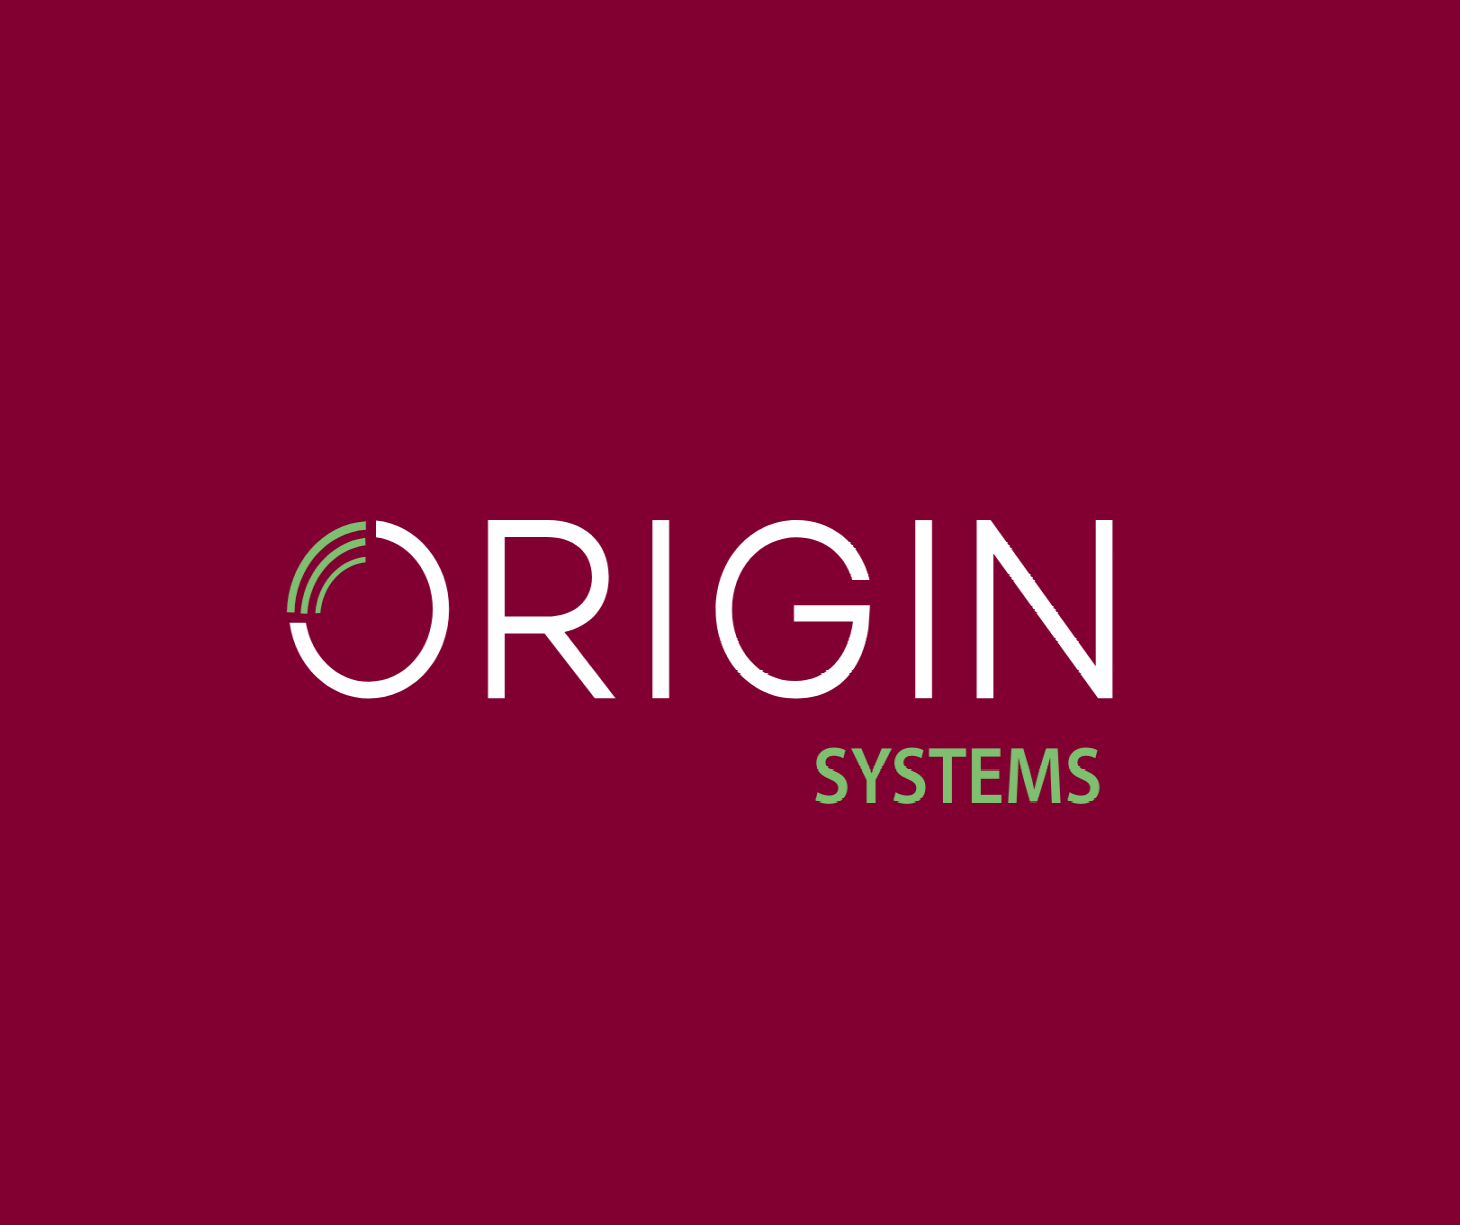 Origin Global